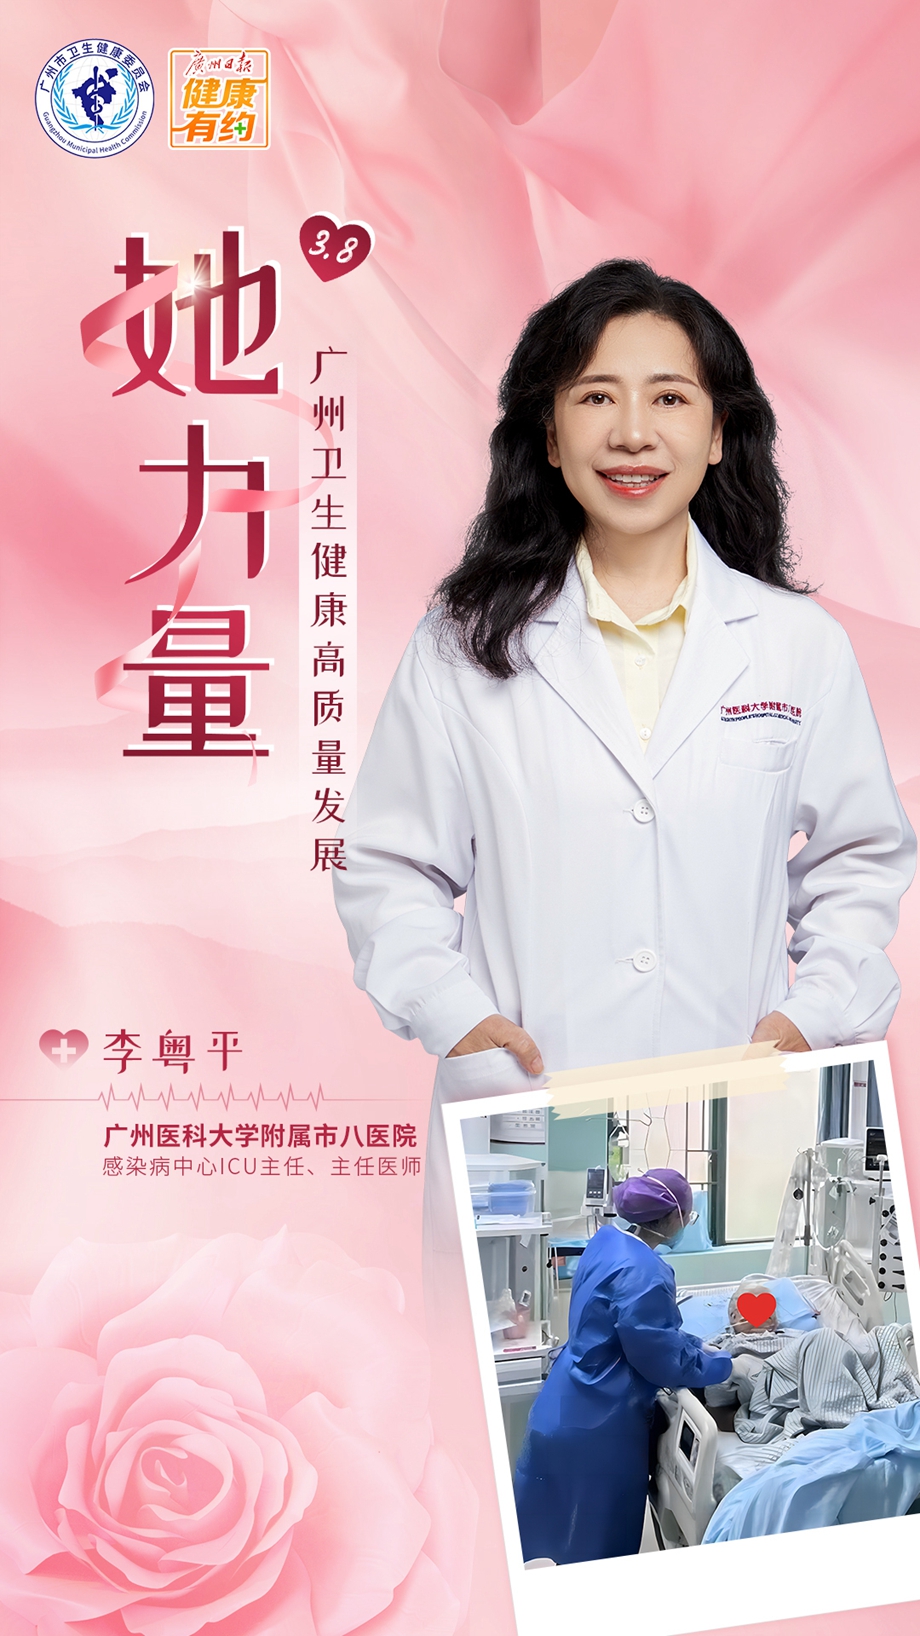 广州医科大学附属市八医院感染病中心ICU主任、主任医师李粤平